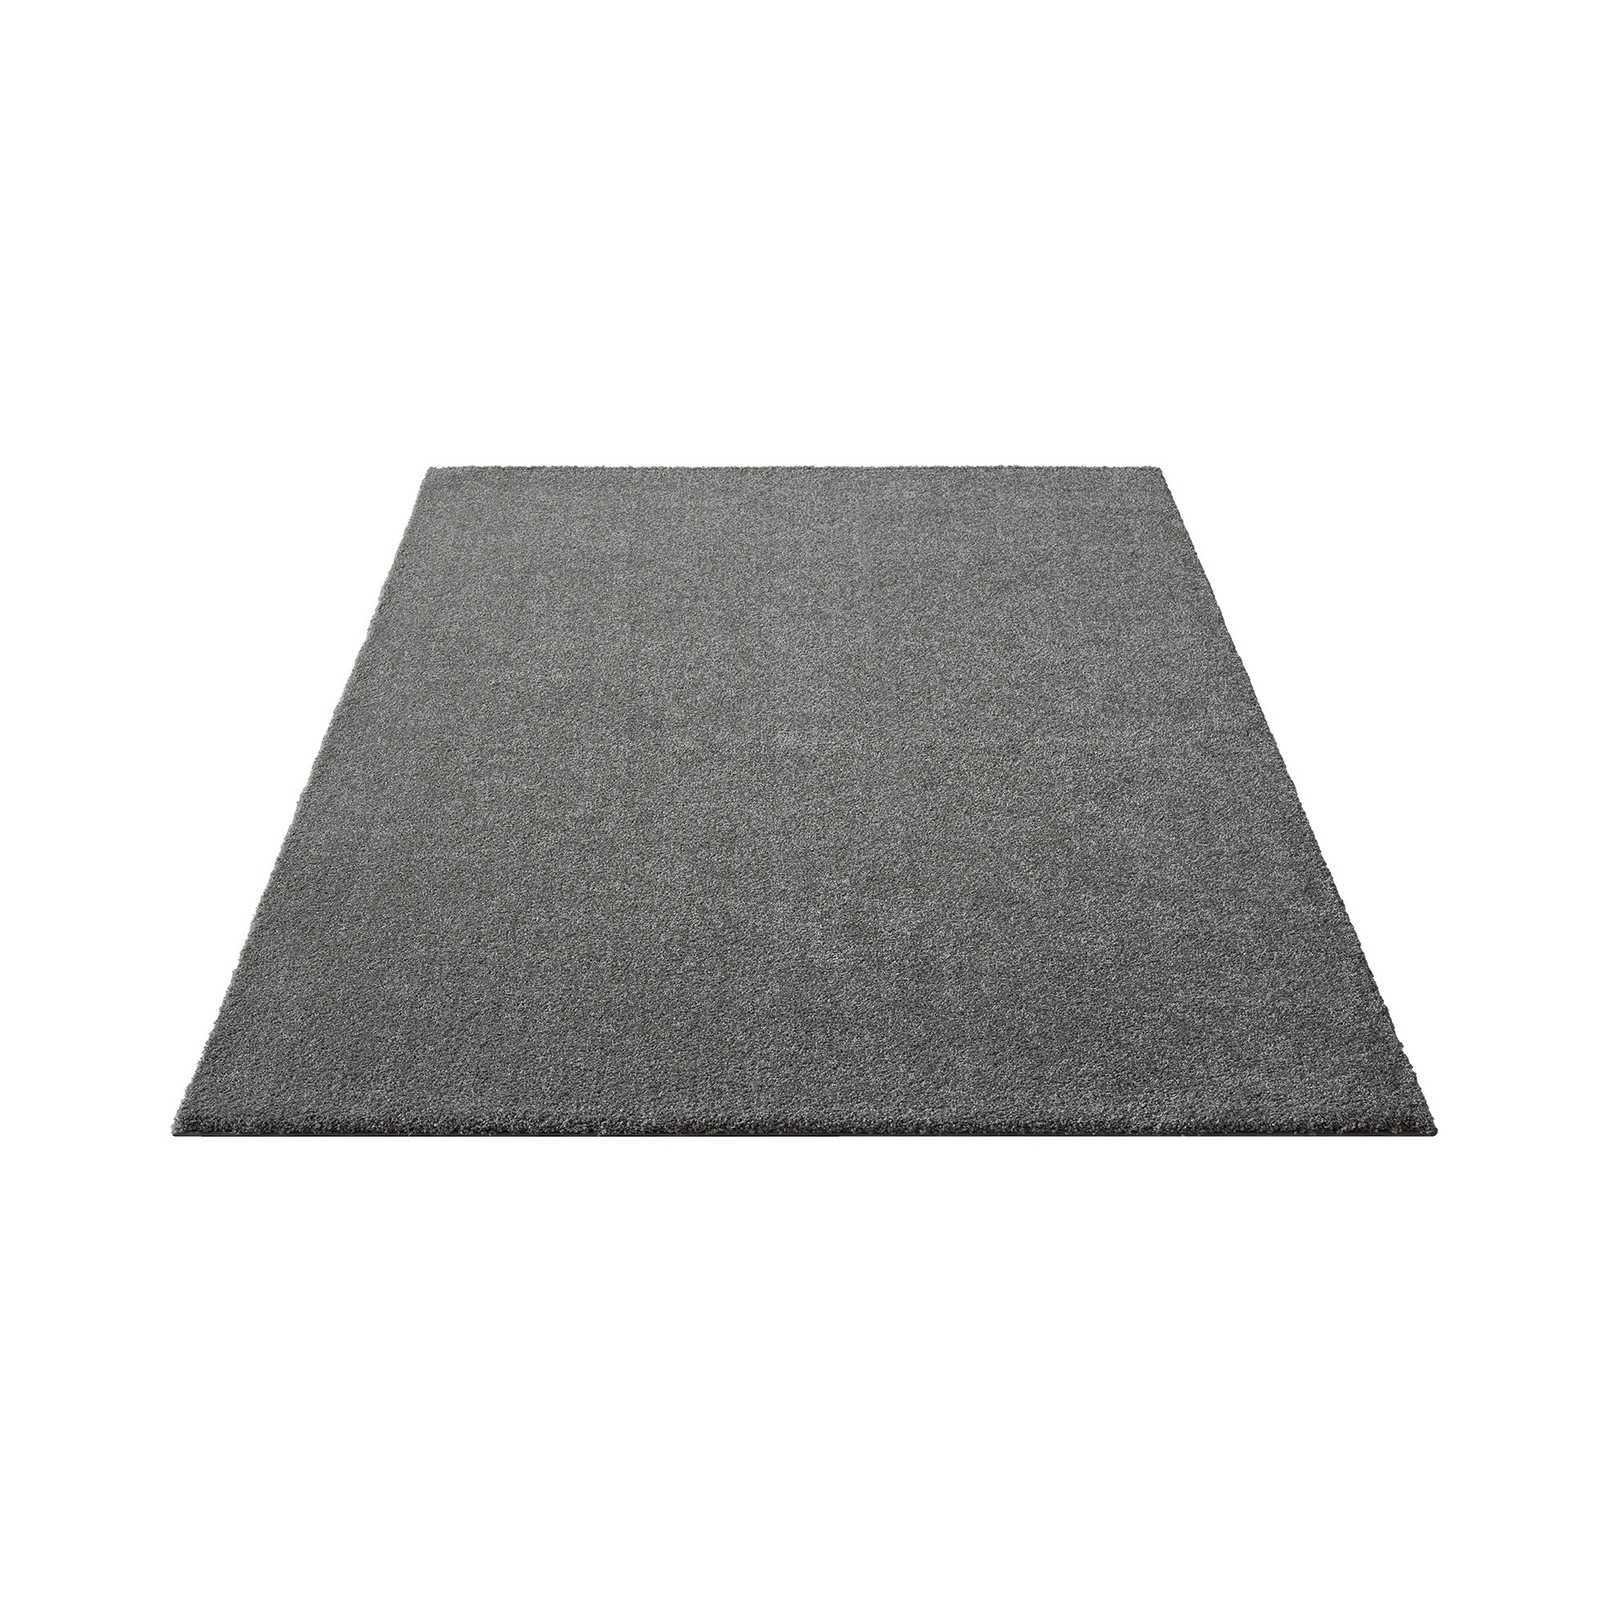 Flauschiger Kurzflor Teppich in Grau – 230 x 160 cm
